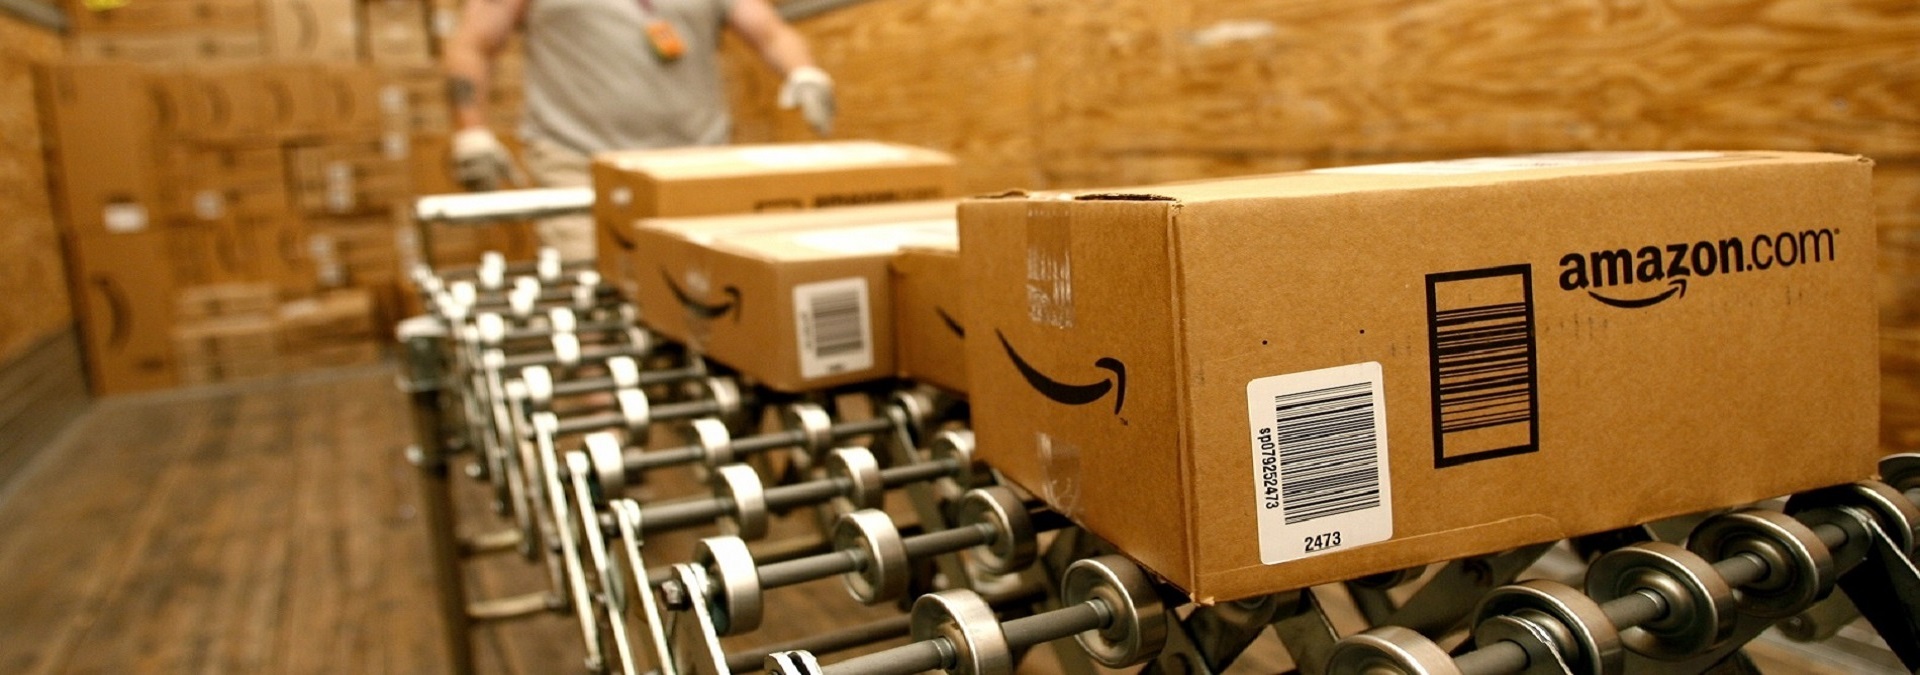 Amazon E-Ticaret Satışı: Başarılı Olmanın İpuçları